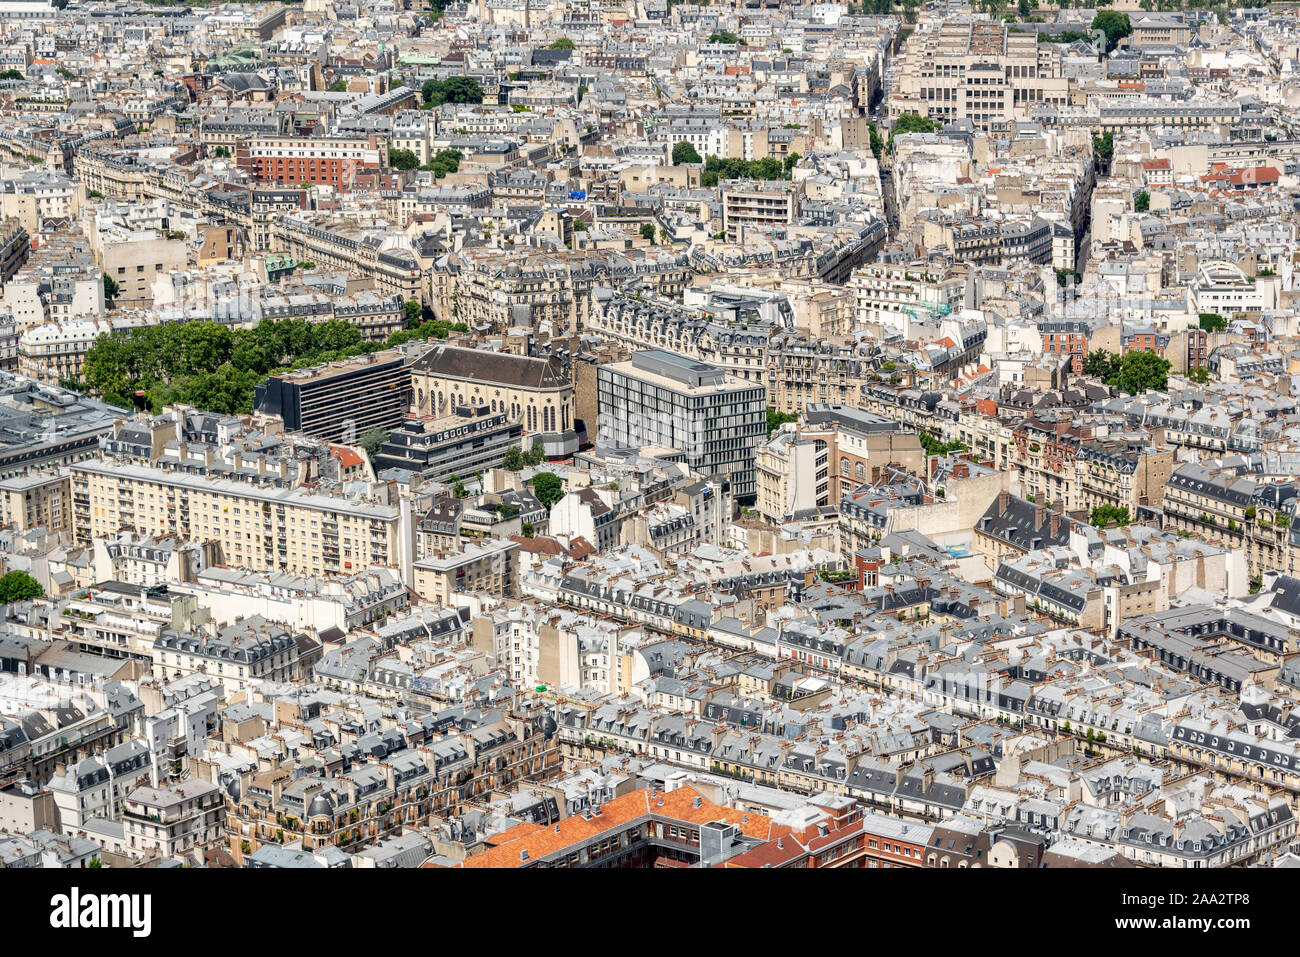 Vue aérienne de buildigs haussmannienne et rues de Paris, France Banque D'Images